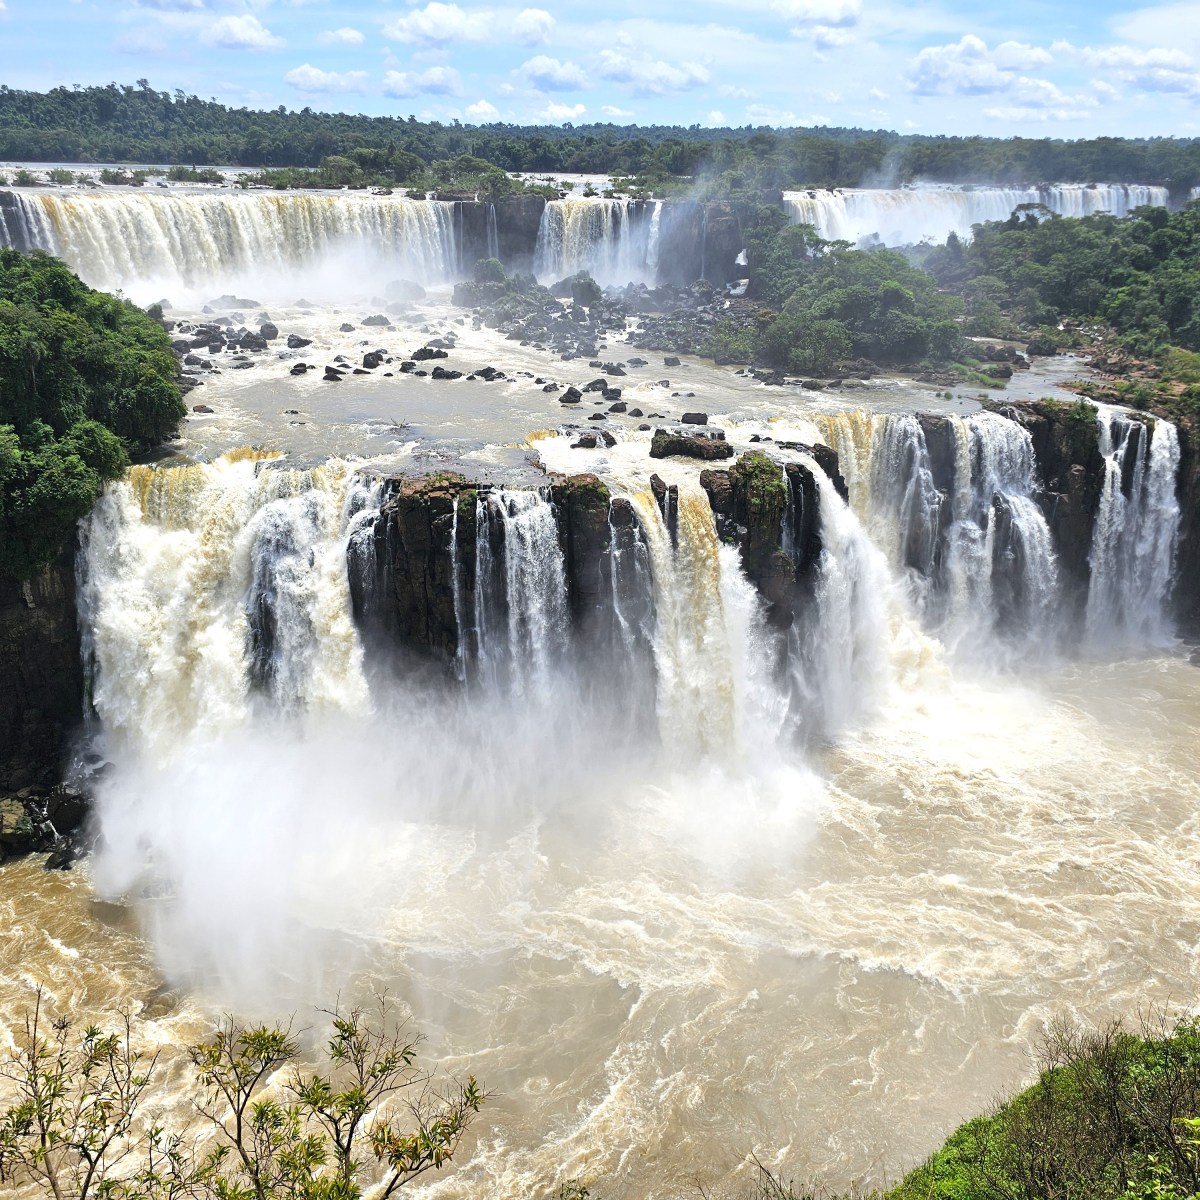 How to Visit Iguazu Falls in Brazil